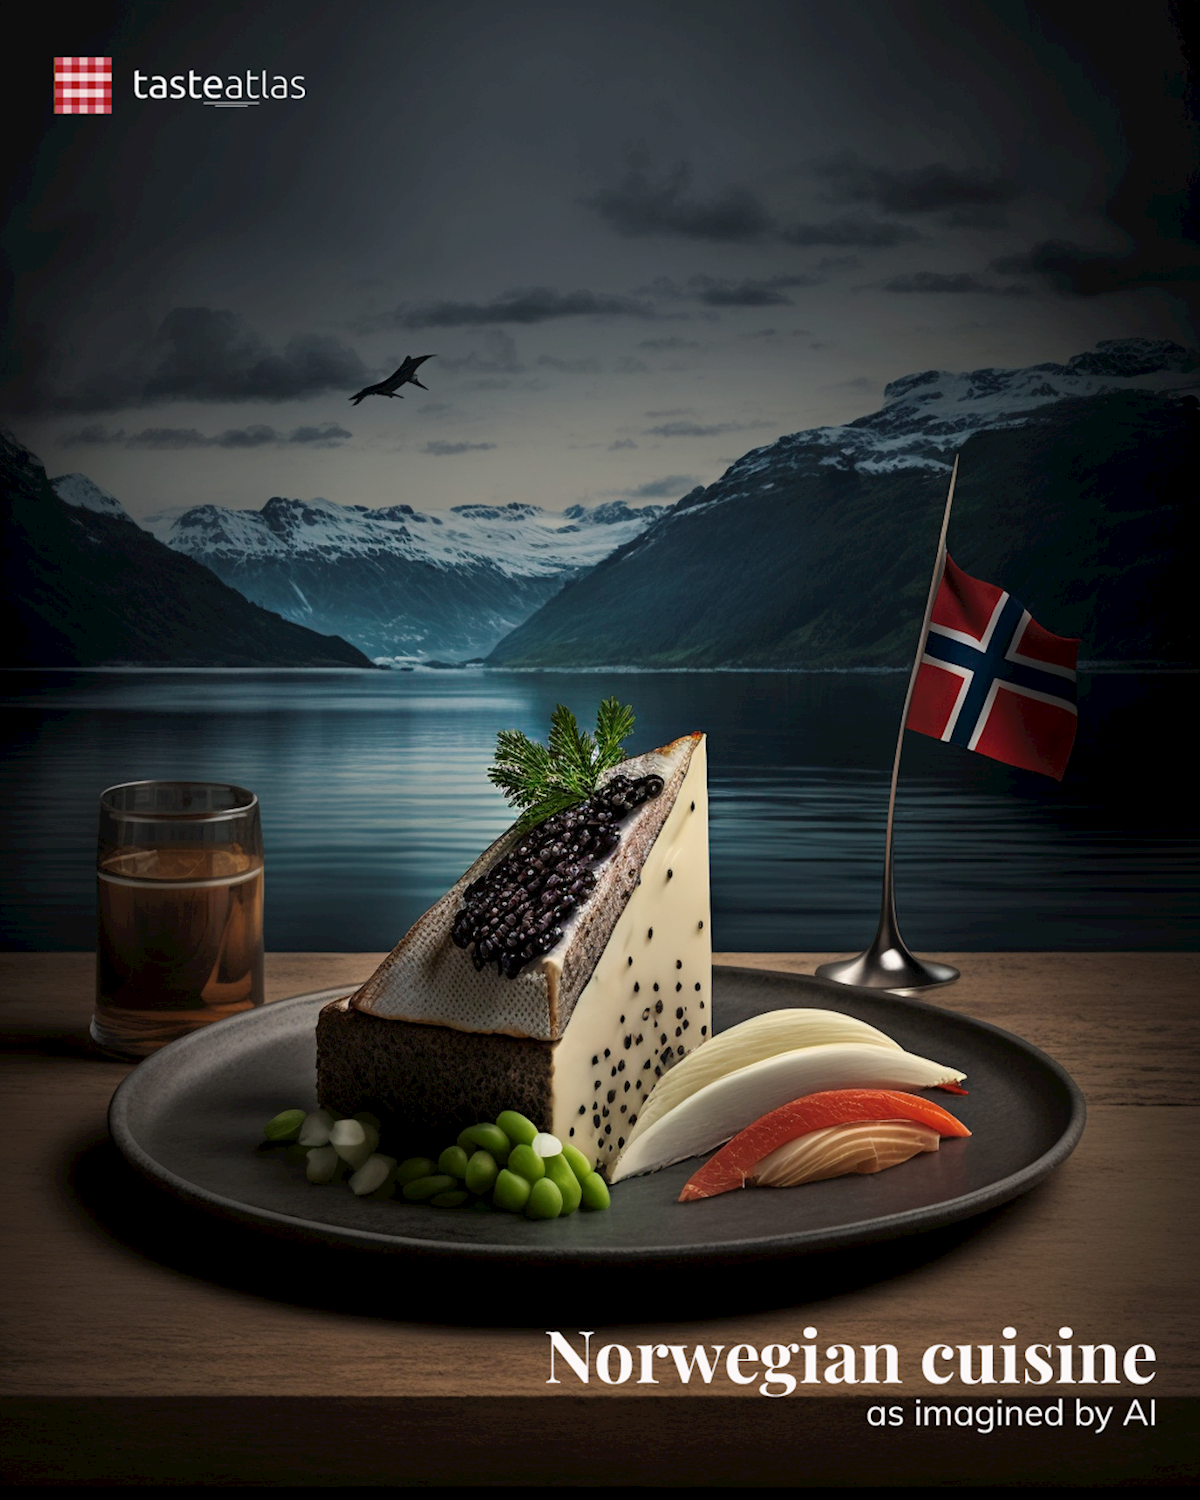 Prompt: Imagine Norwegian cuisine